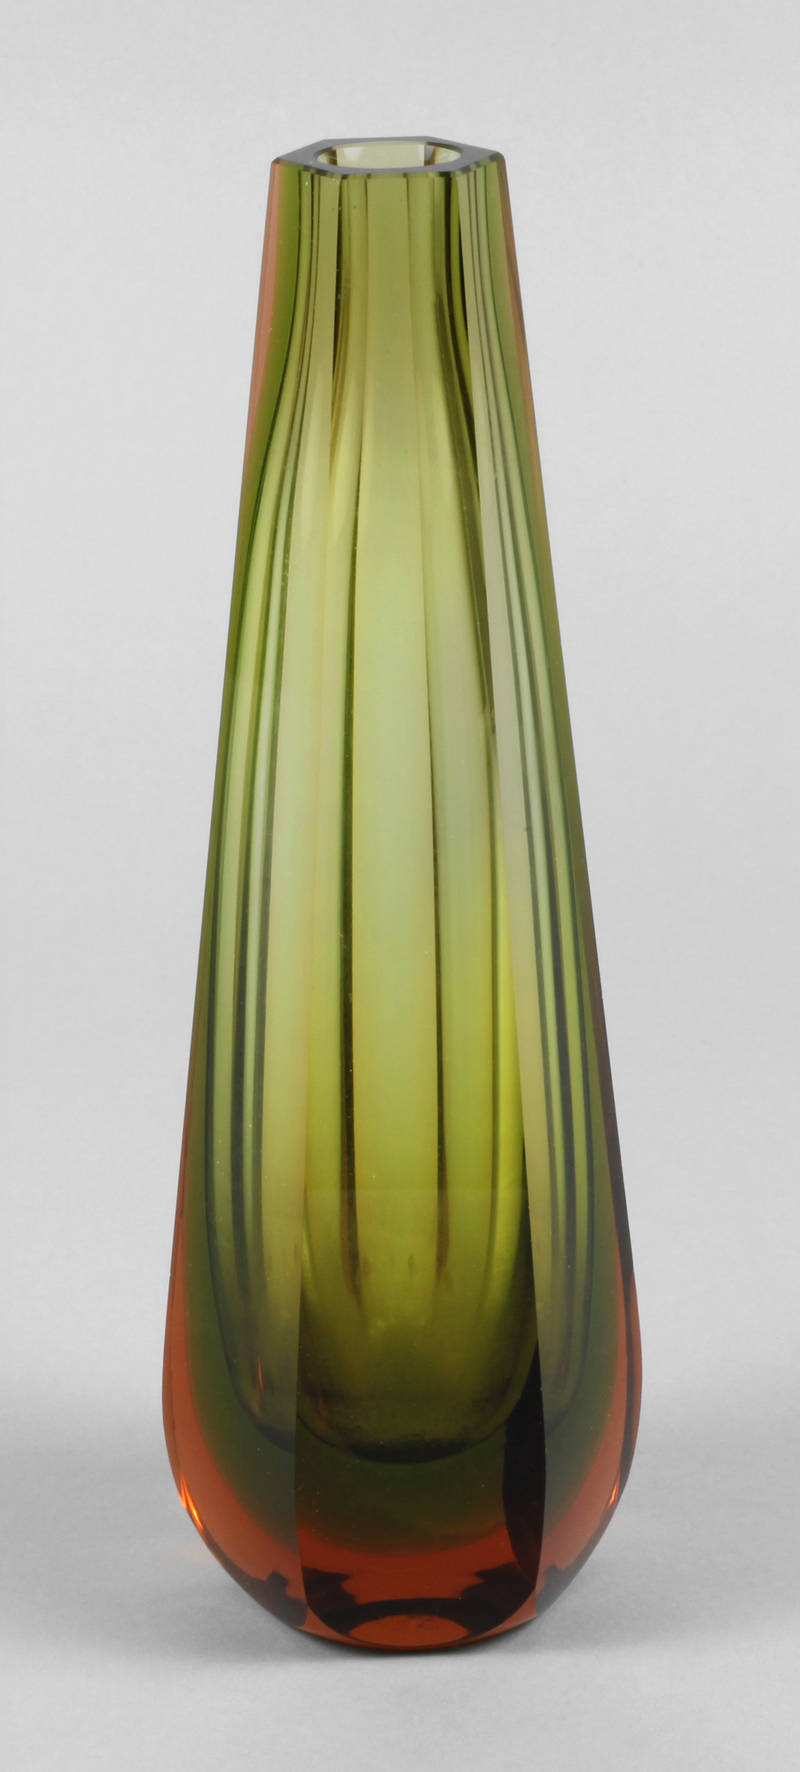 Murano Vase ”Sommerso”